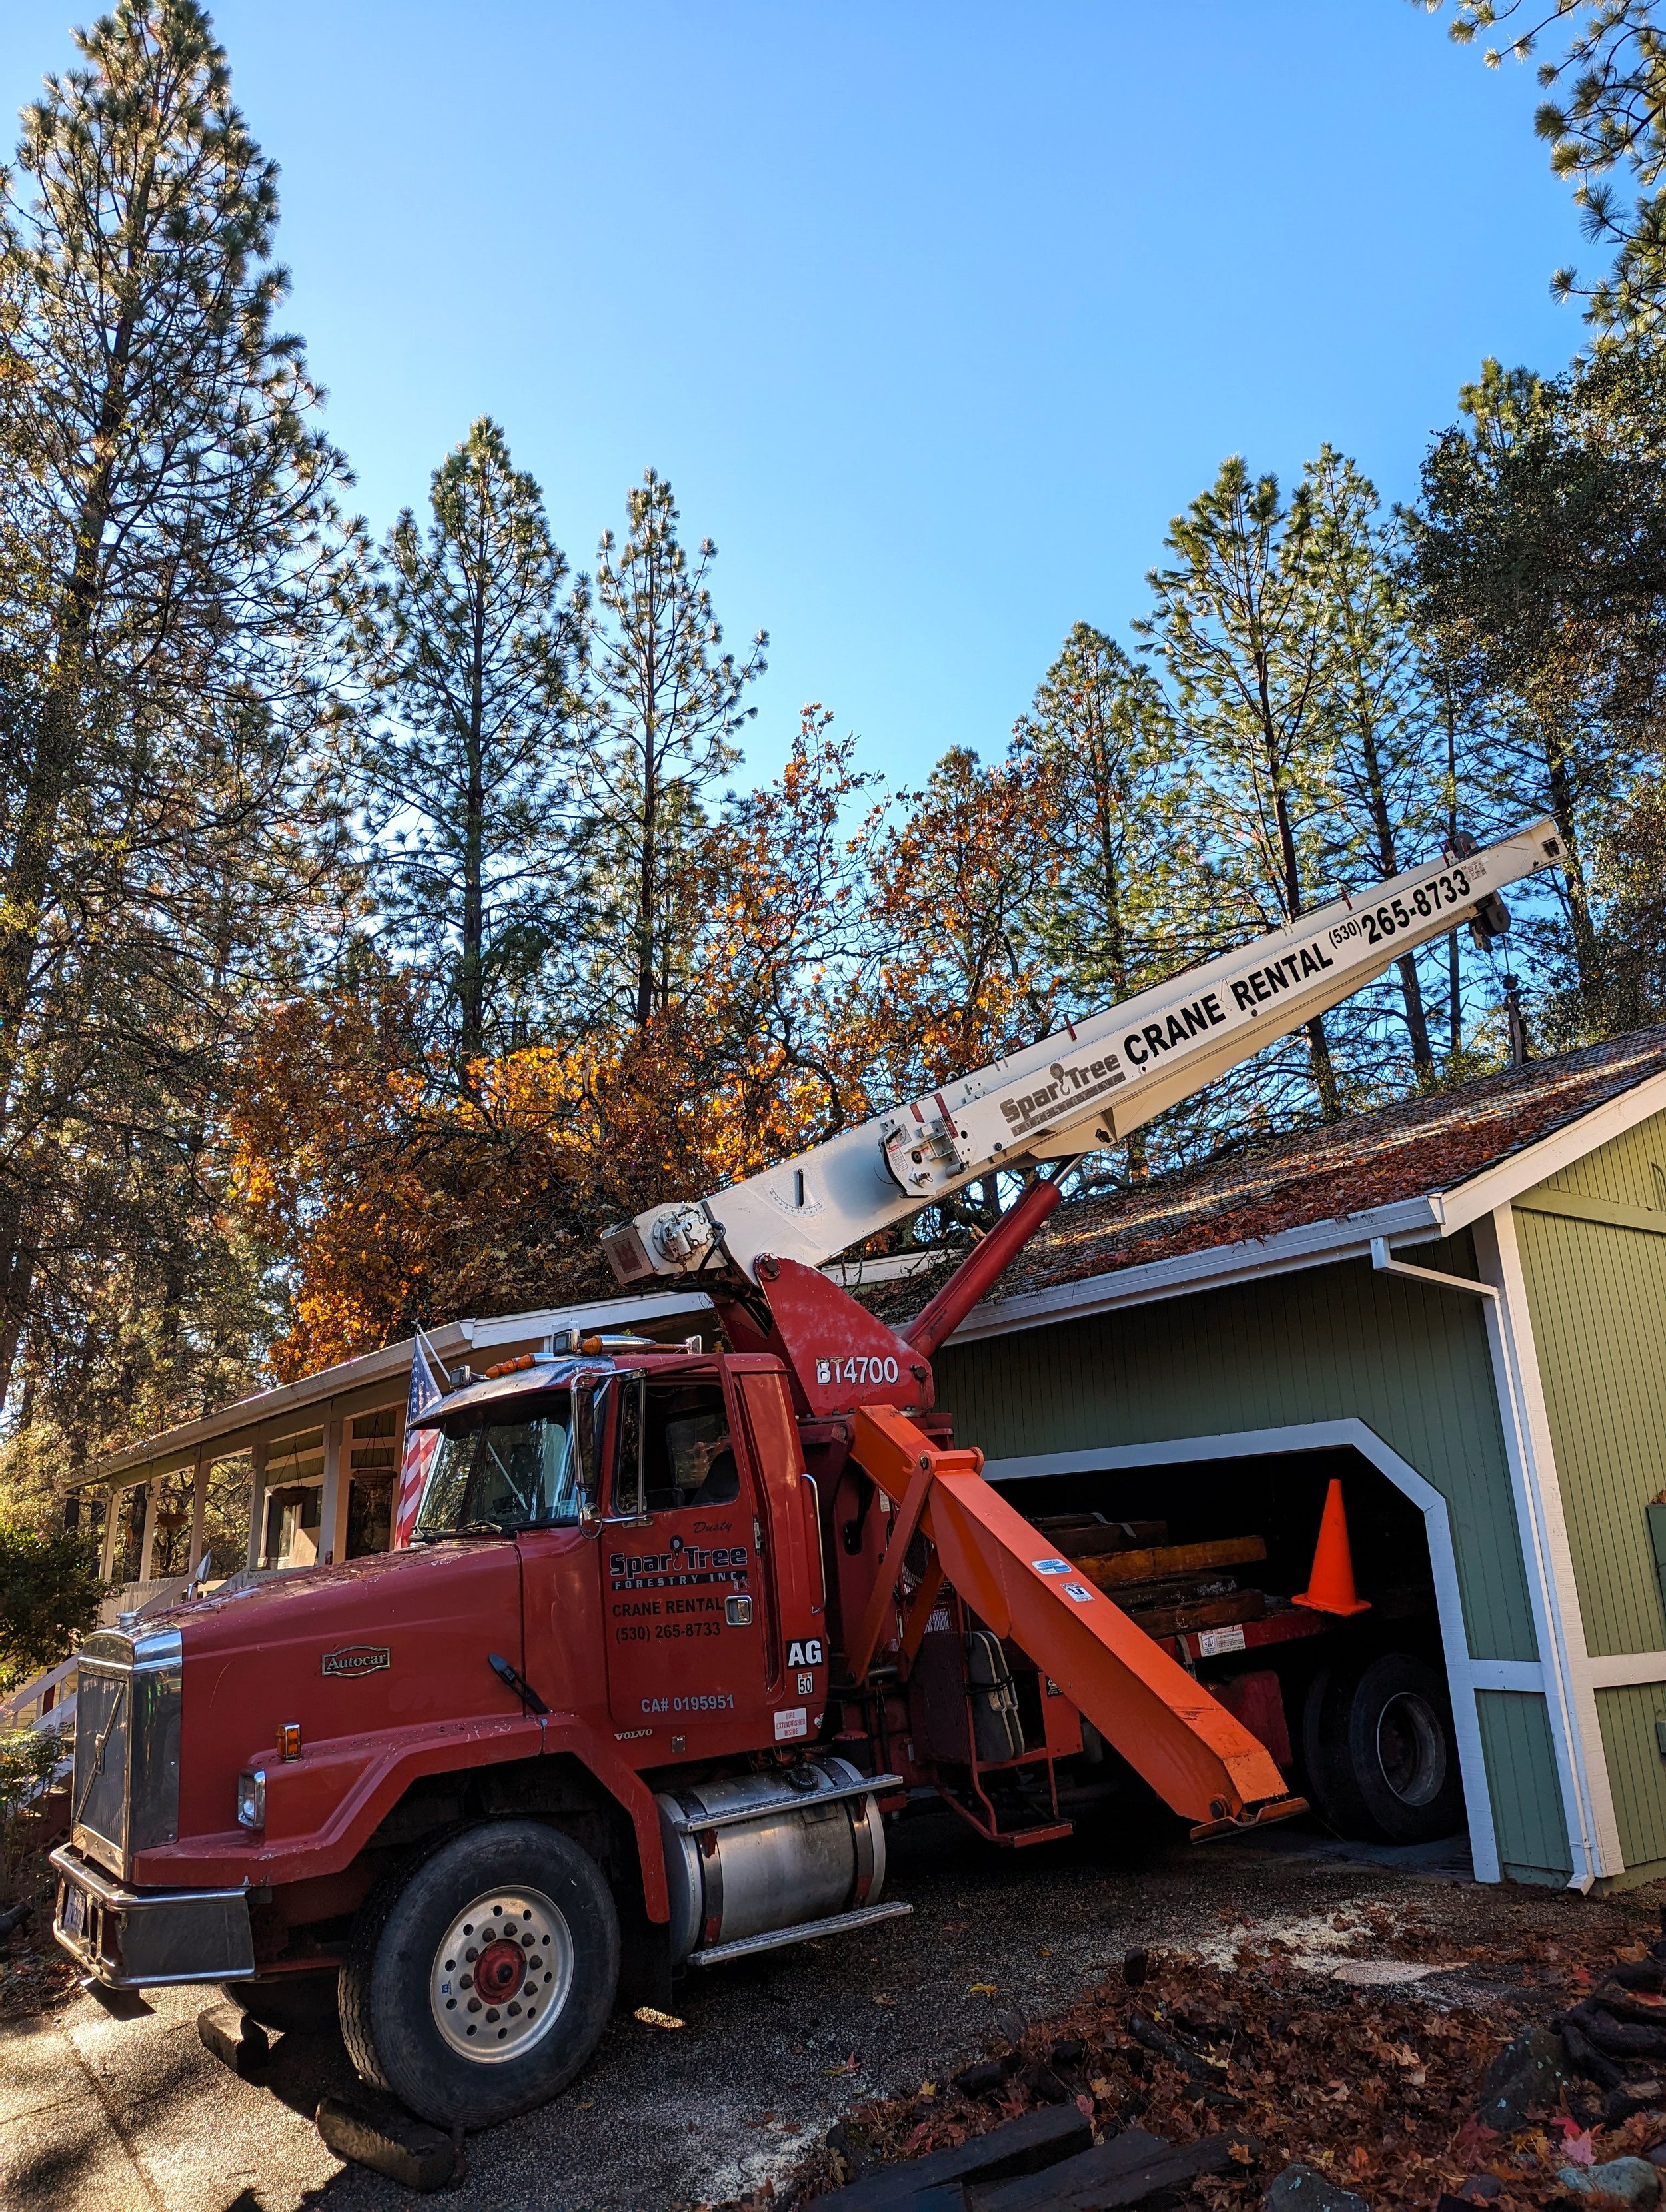 Hazard Tree Removal Storm Work Cleanup Lake Wildwood Crane .jpg